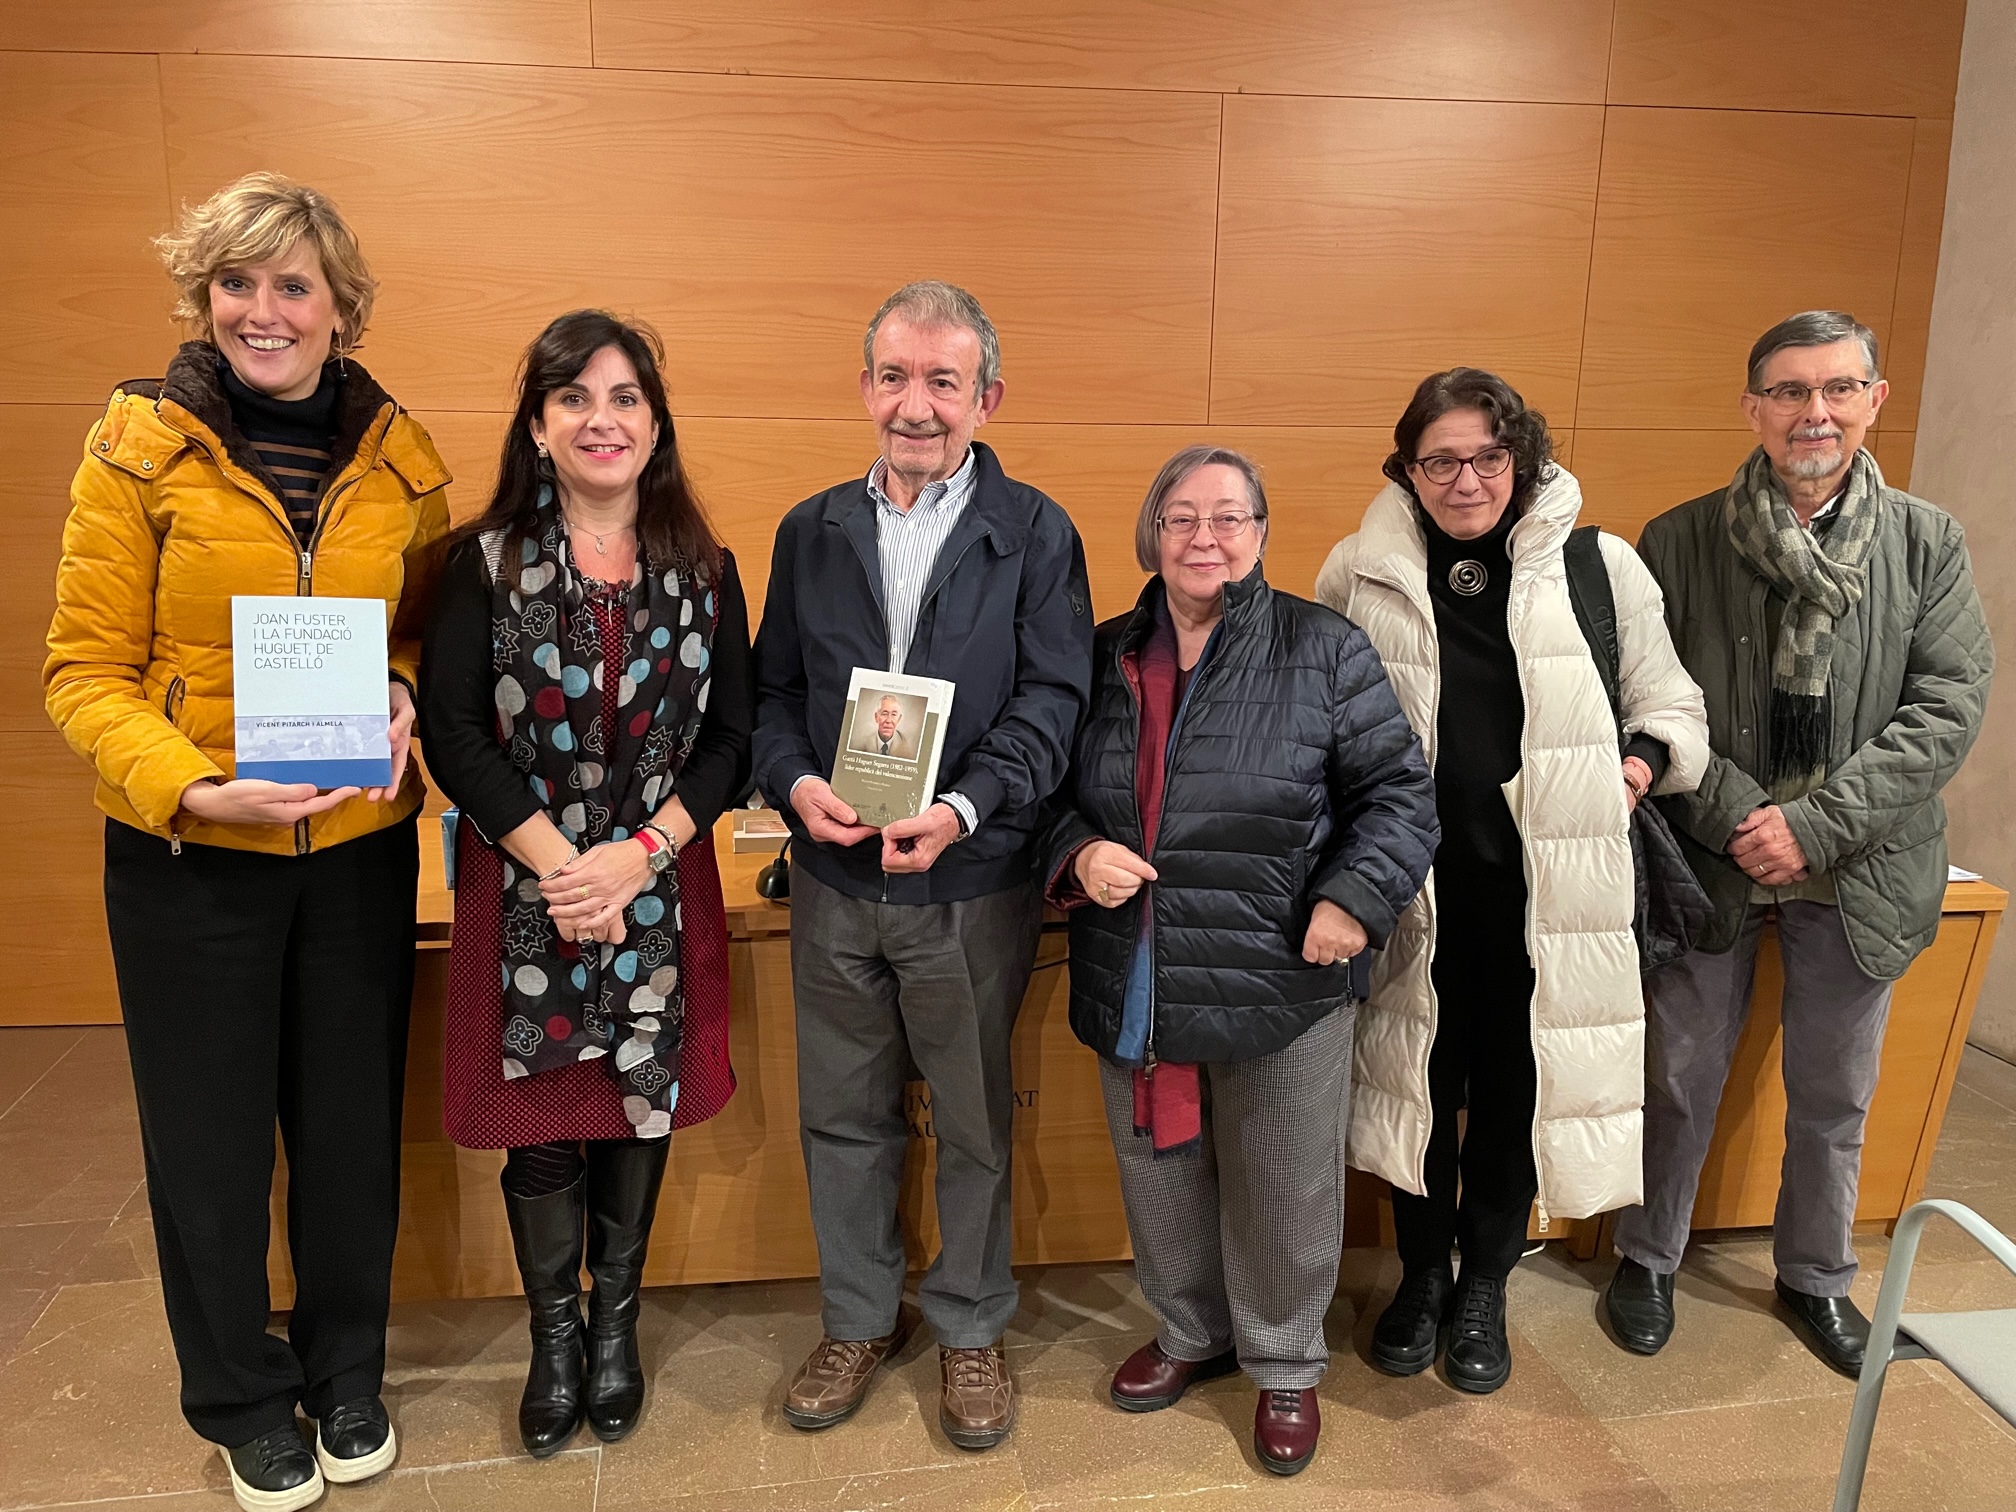 Regidoria i UJI presenten els llibres ‘Joan Fuster i la Fundació Huguet’ i ‘Gaetà Huguet Segarra, líder republicà del valencianisme’, de Vicent Pitarch  